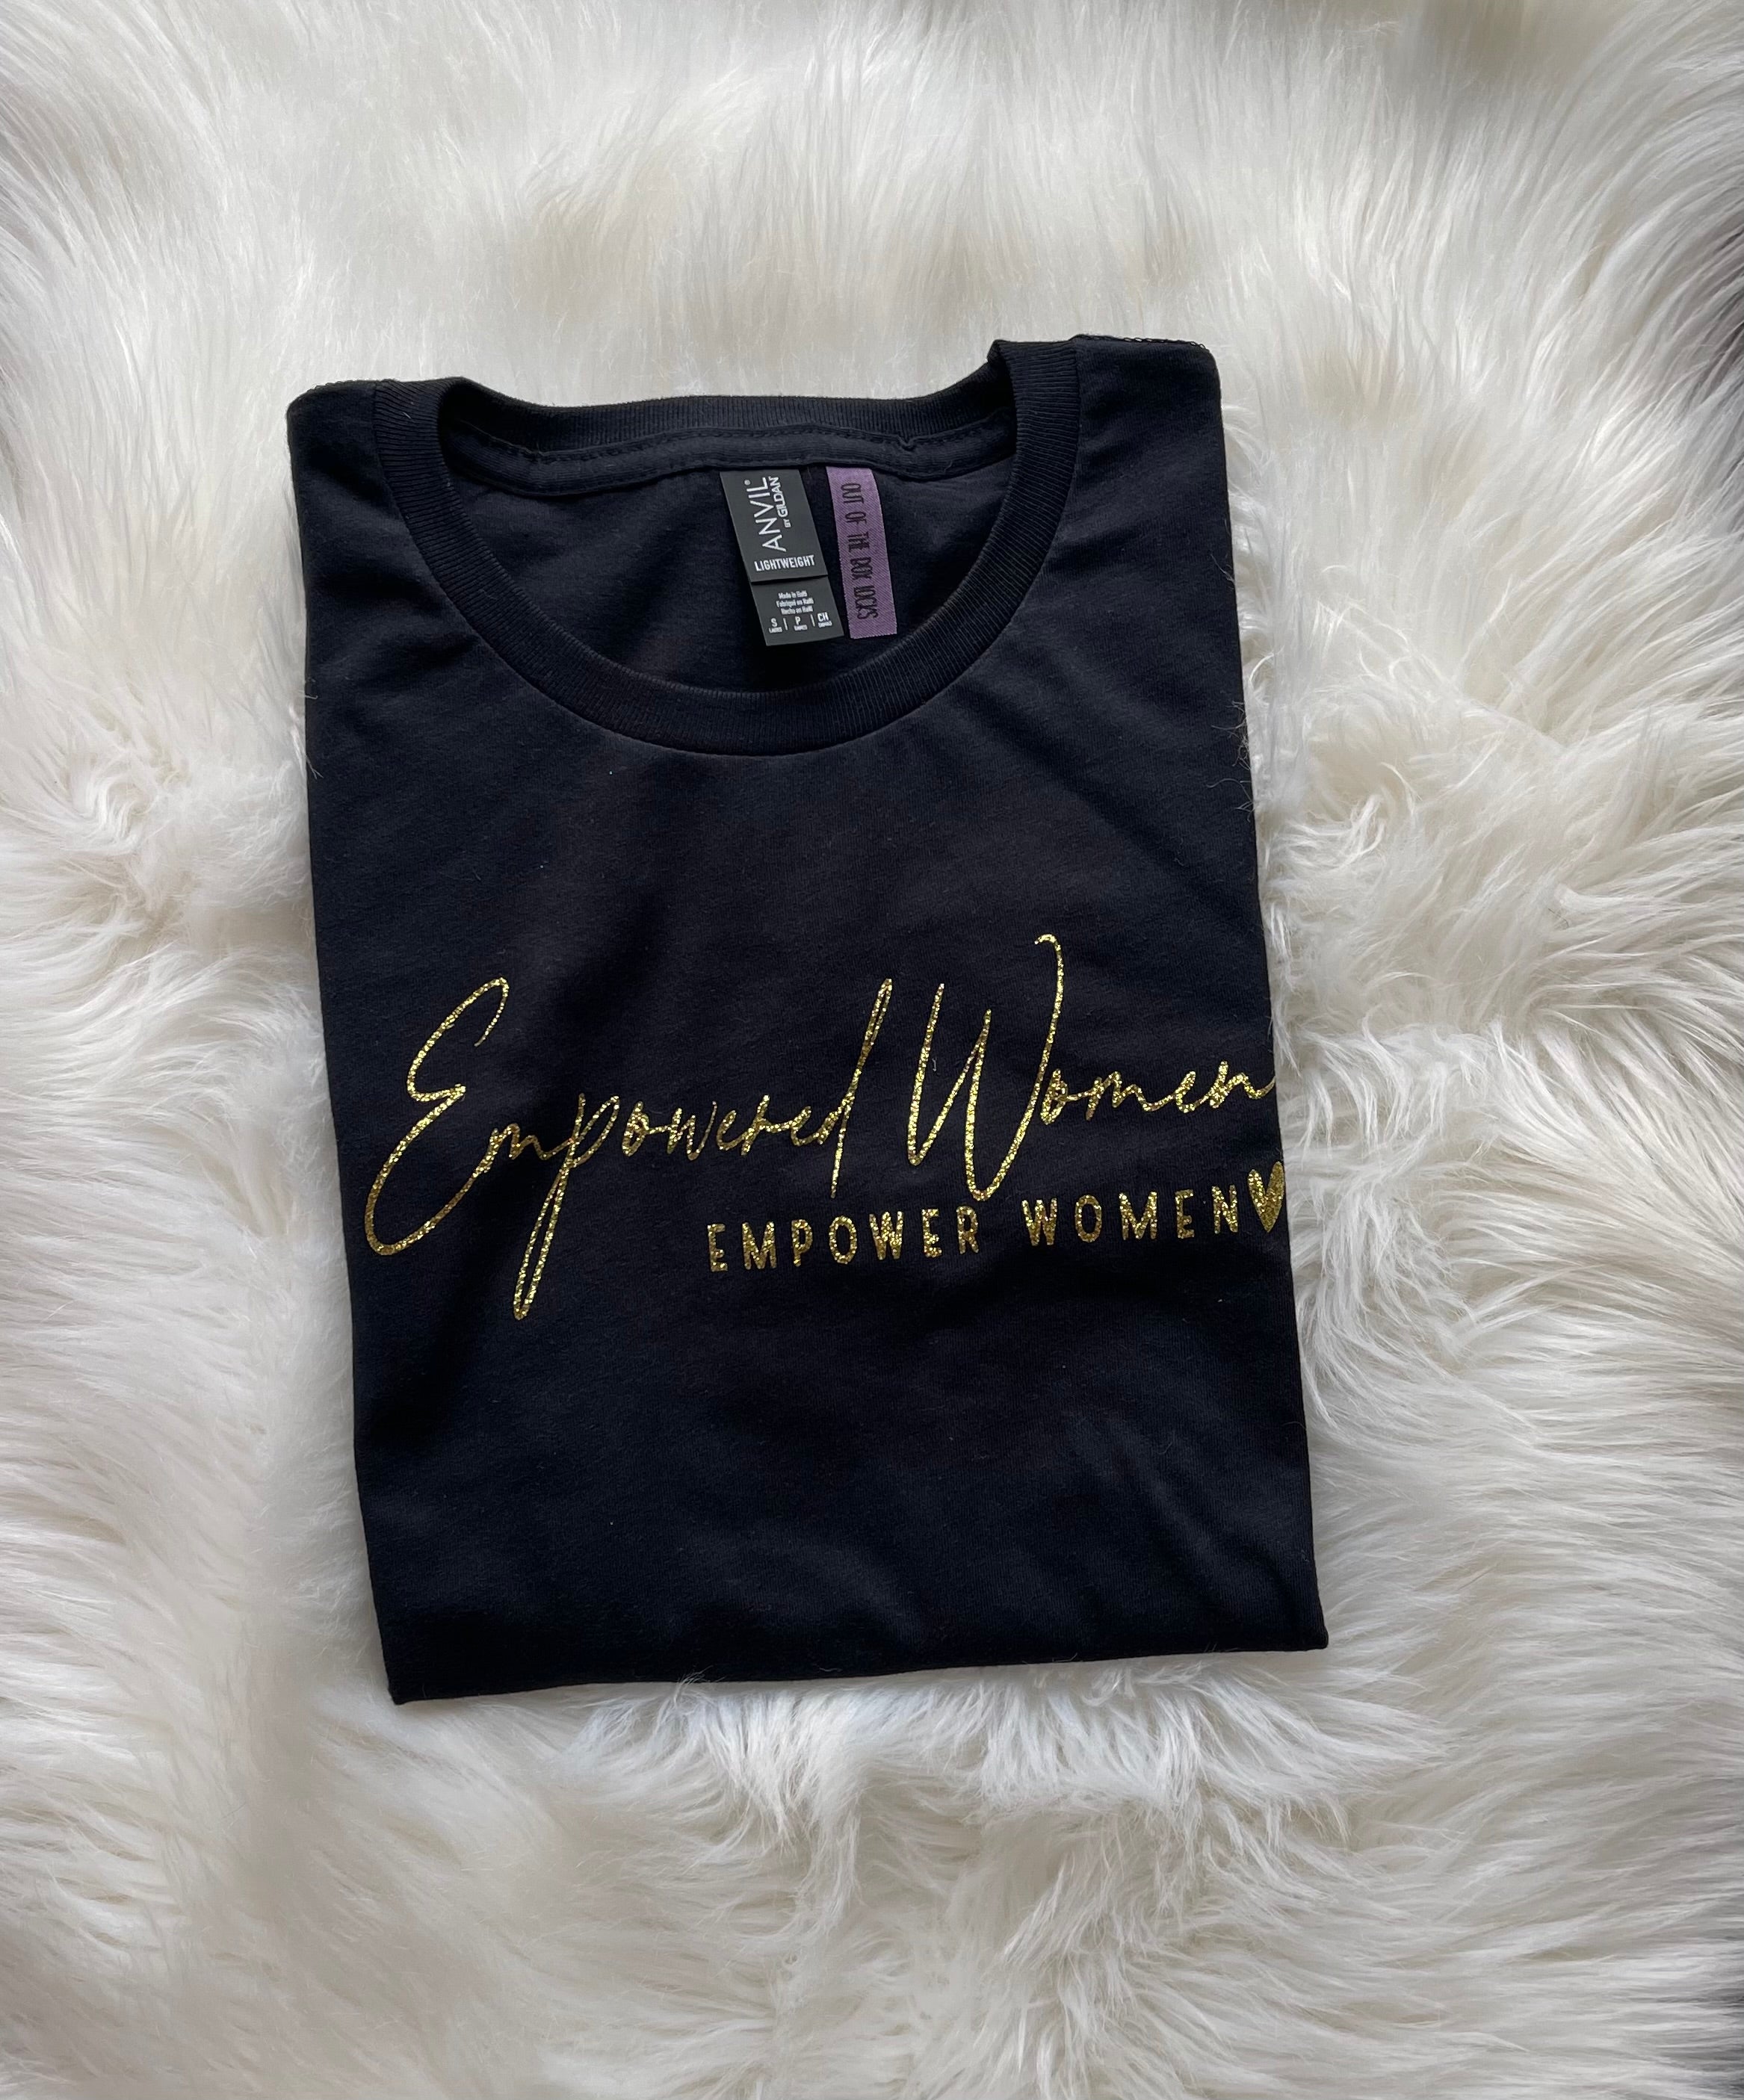 Empowered Women Empower Women (Onesie)